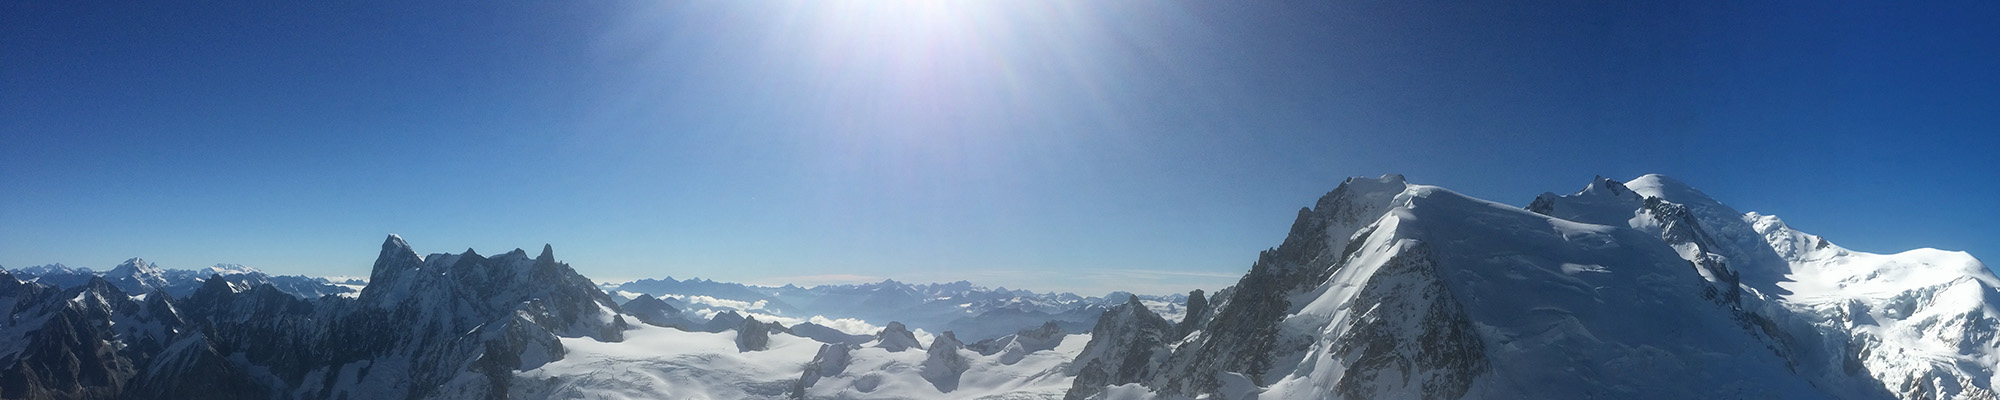 Chamonix Winter Panorama